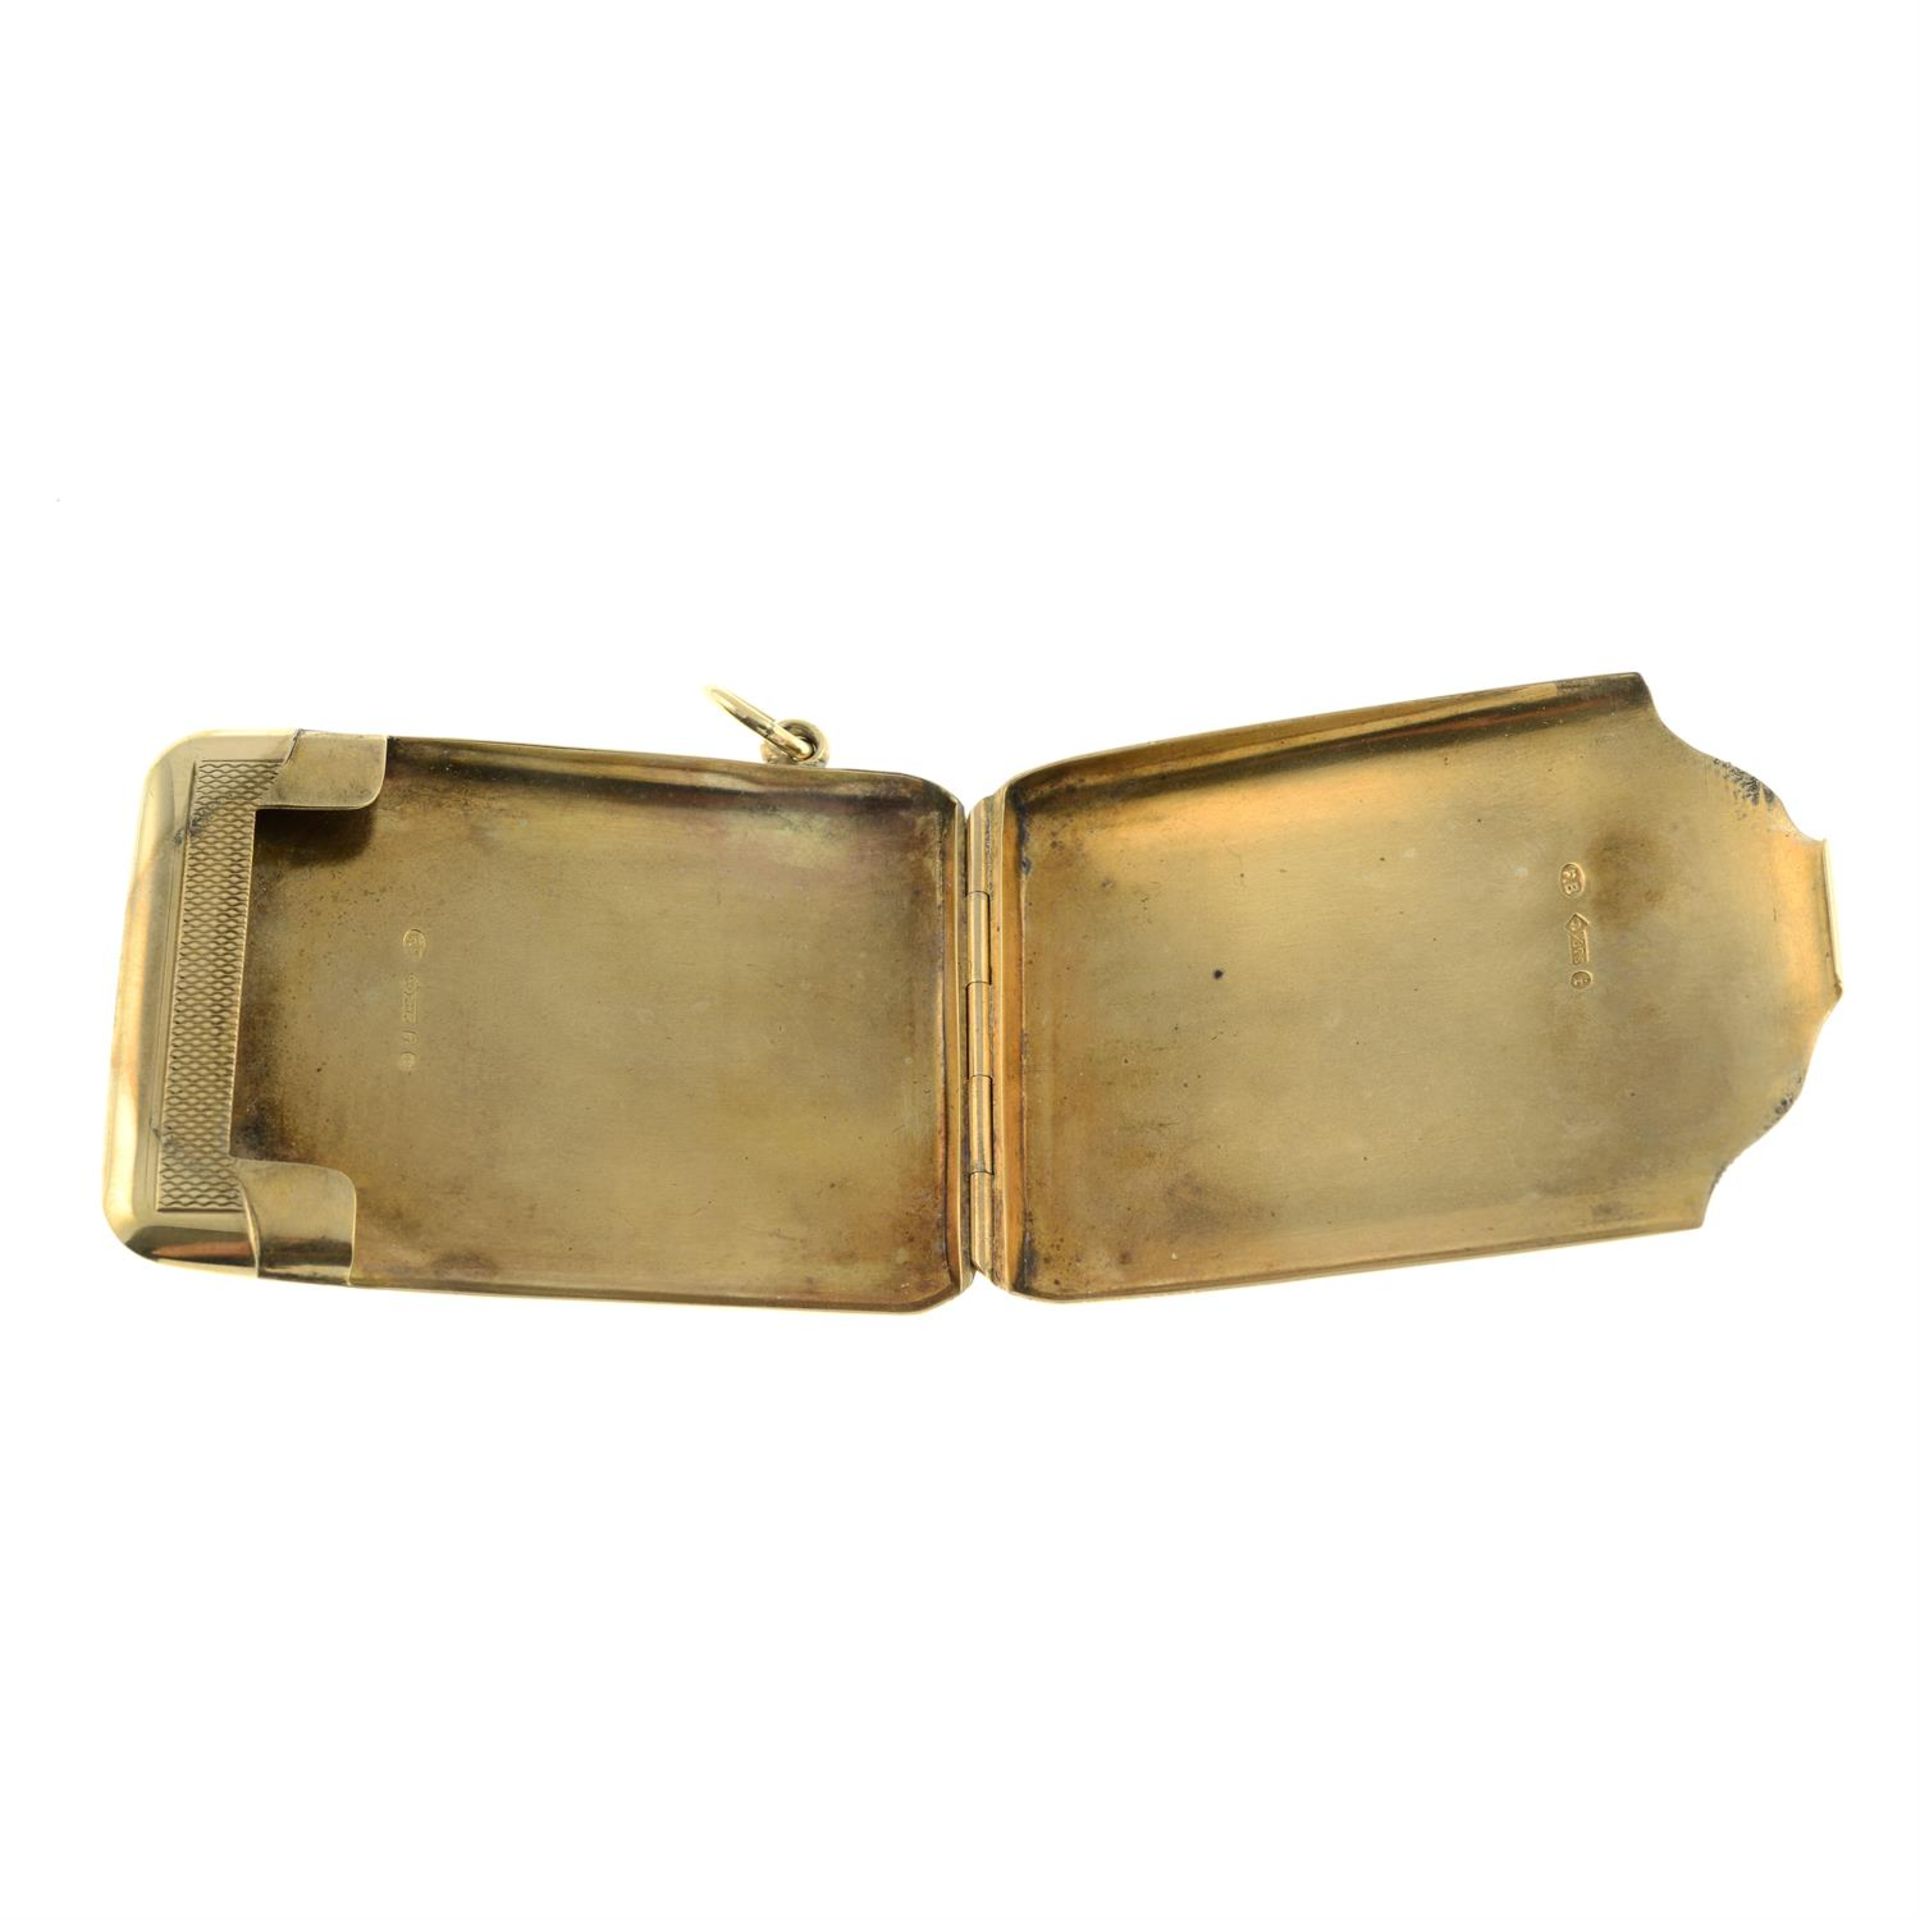 An Edwardian 9ct gold Vesta case. - Image 2 of 2